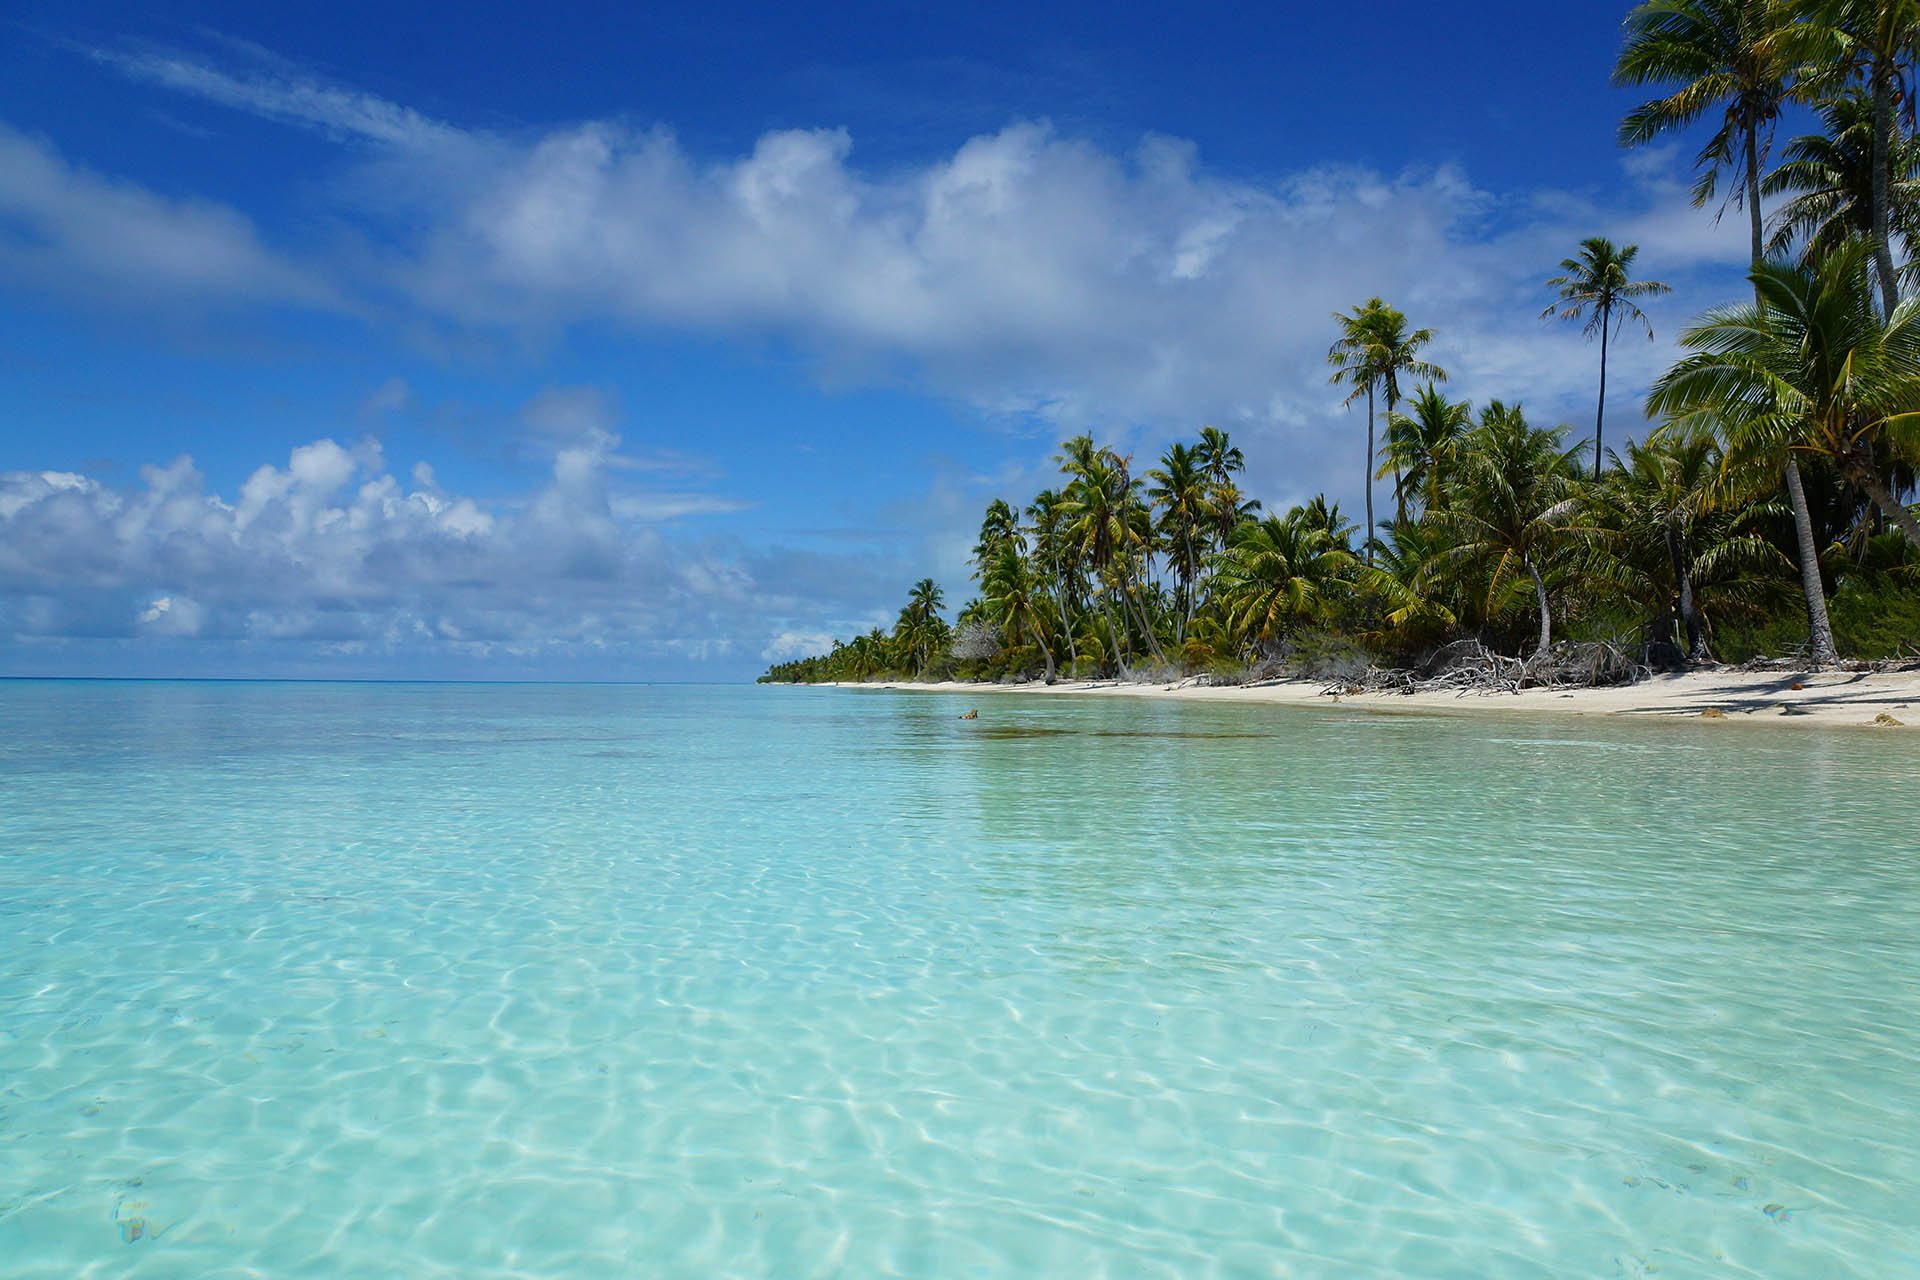 20 foto’s waardoor je nú naar Frans-Polynesië wilt afreizen